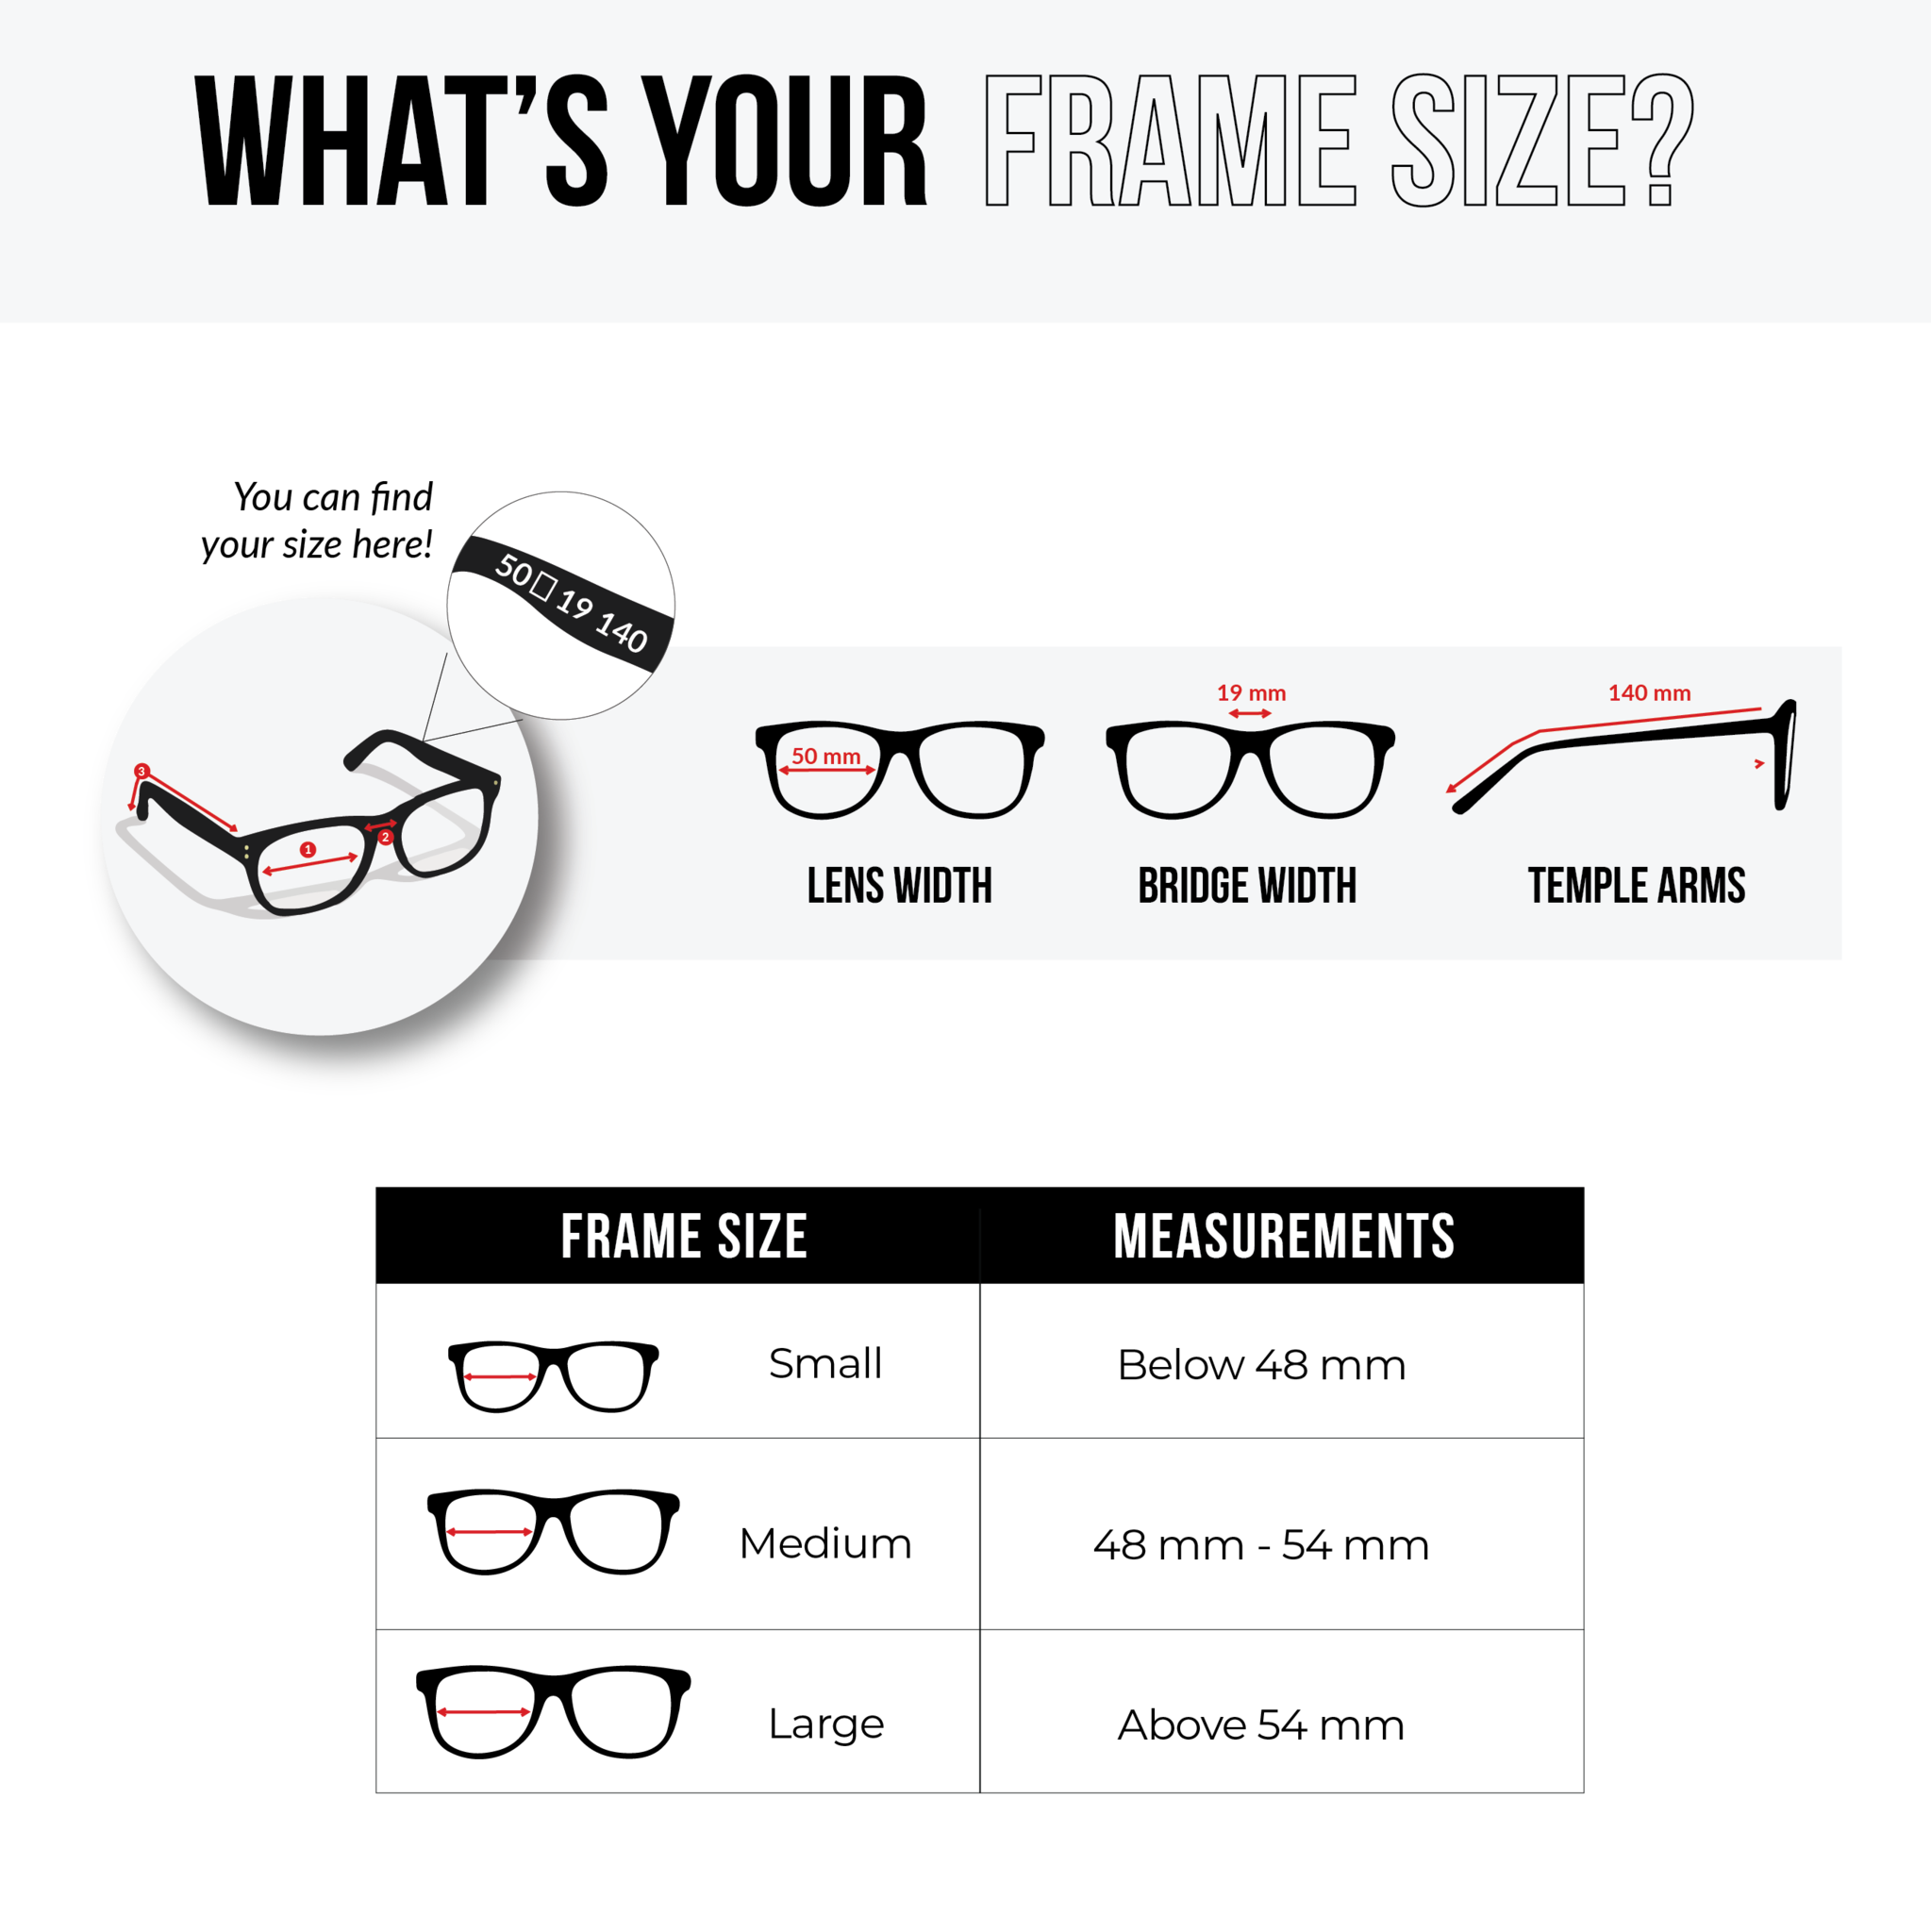 NS Deluxe - 5206 - Black Tortoise - Eyeglasses